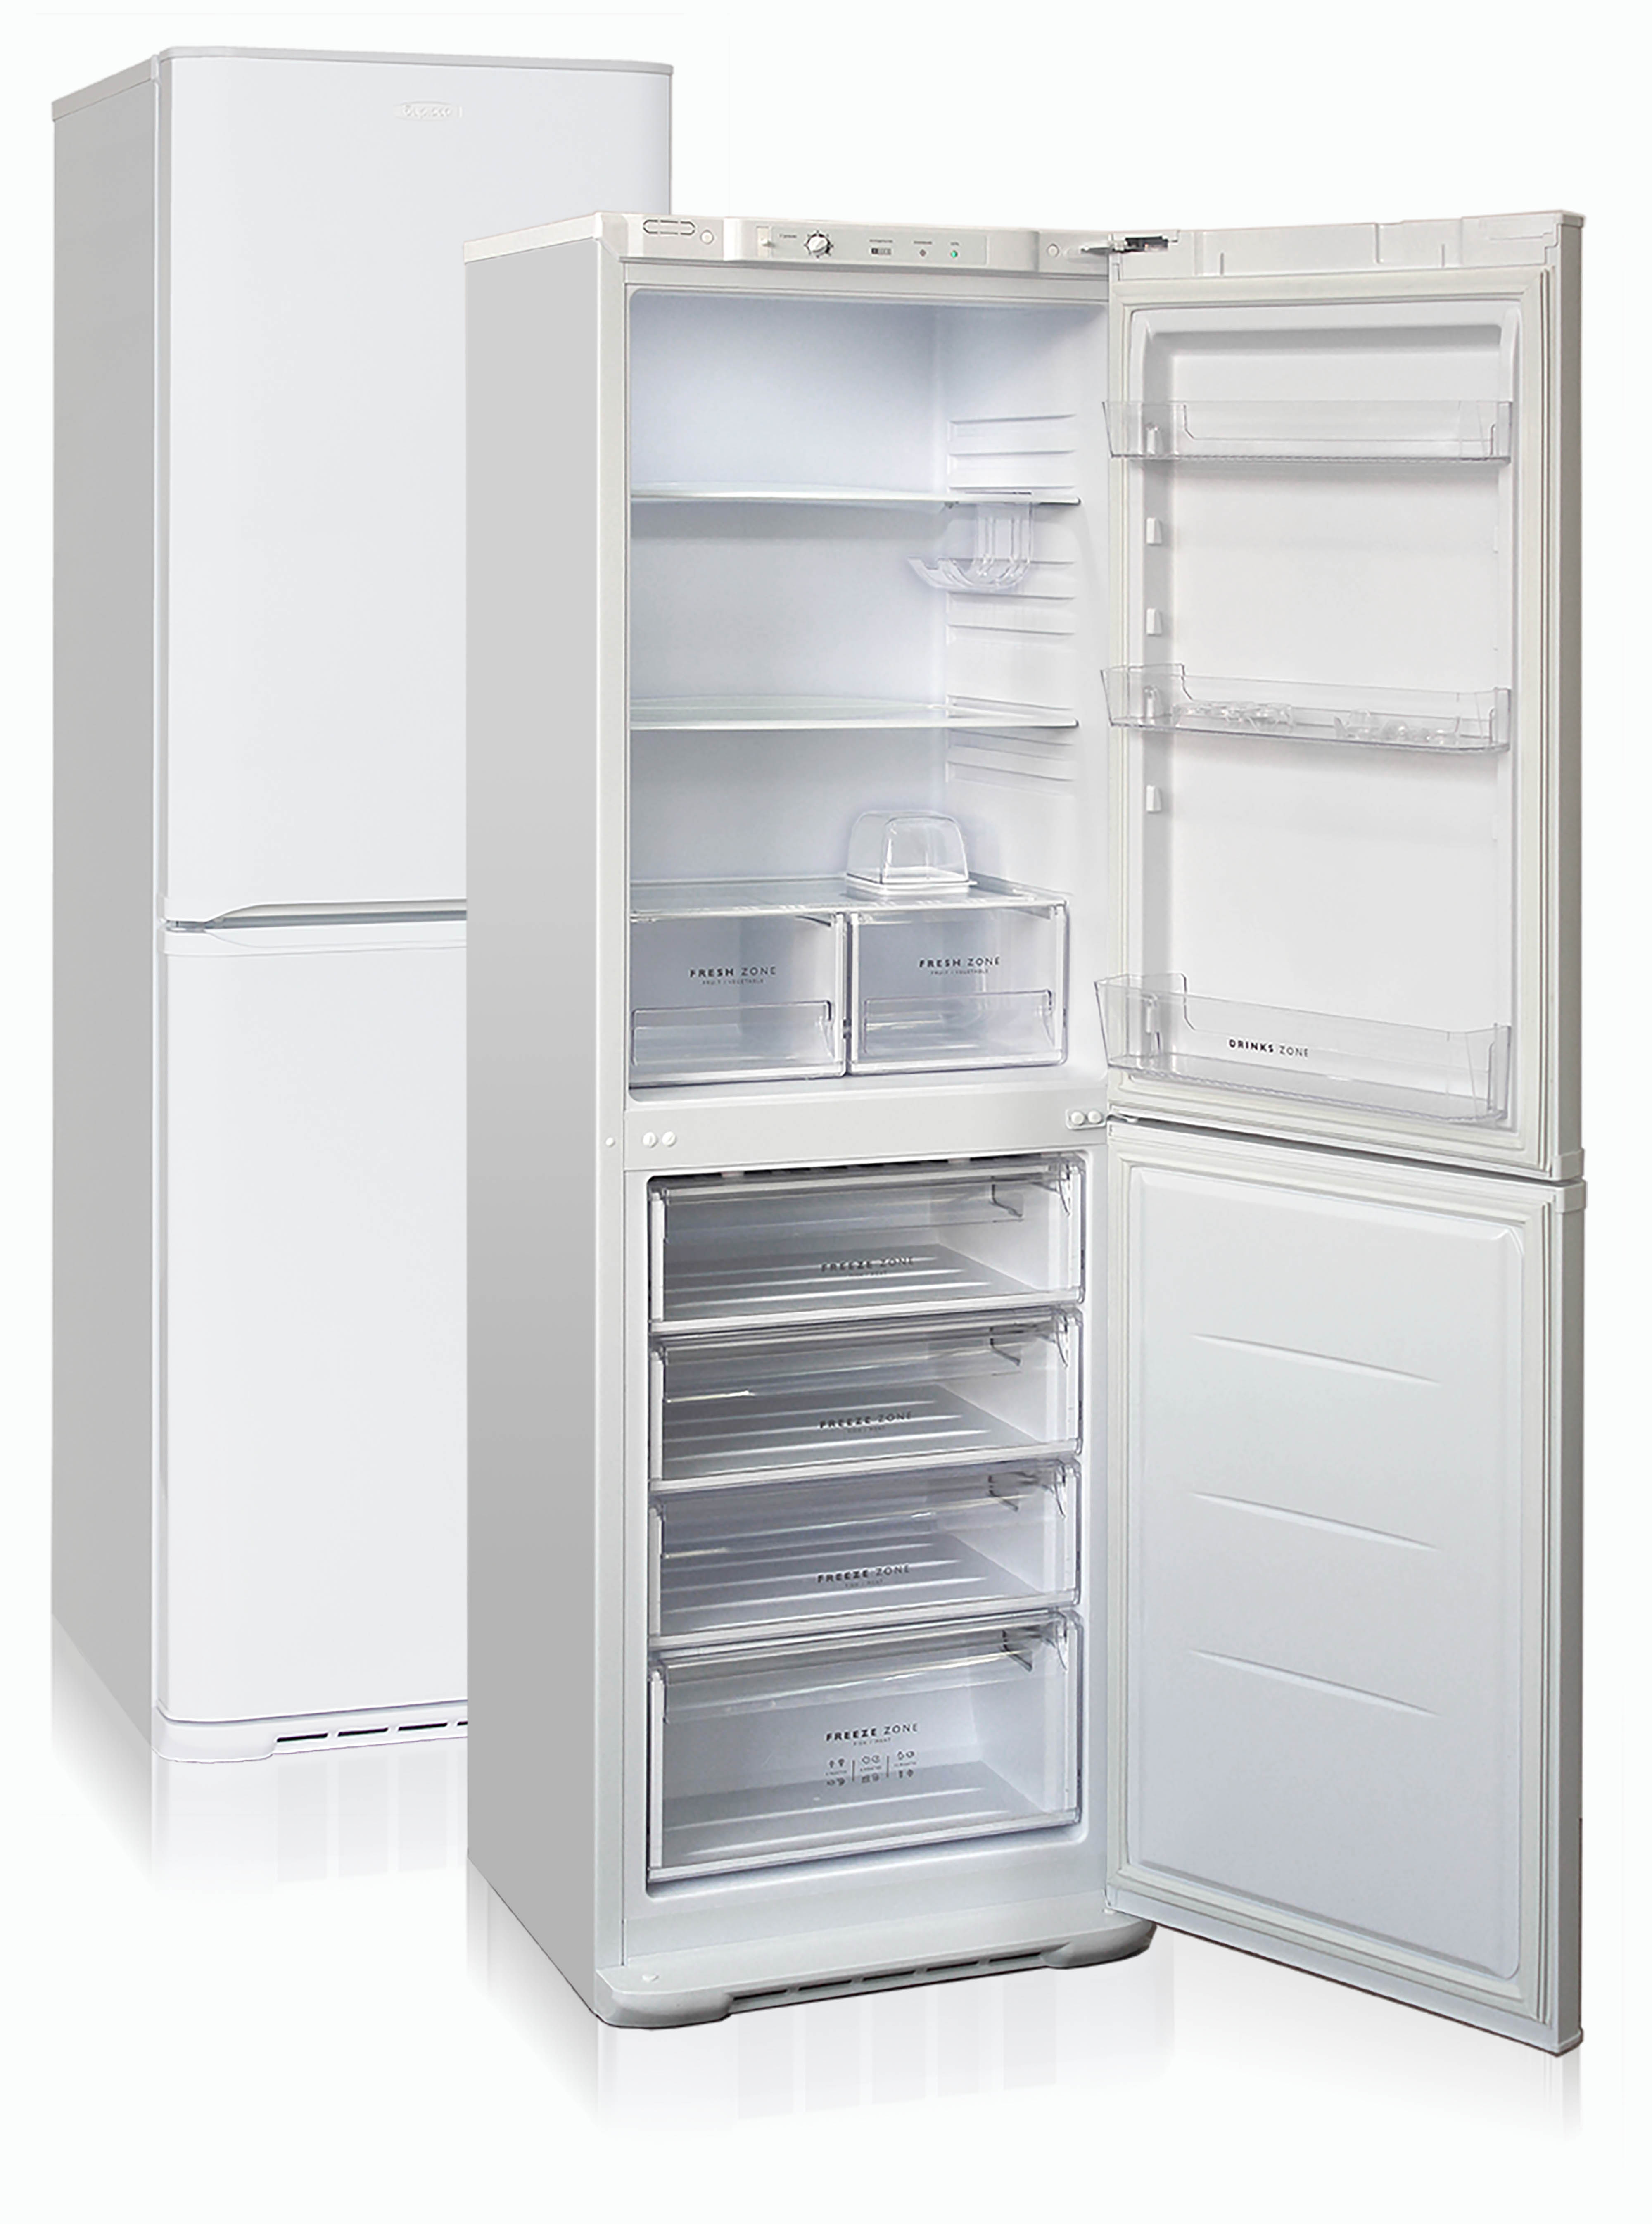 холодильник бирюса 631, купить в Красноярске холодильник бирюса 631,  купить в Красноярске дешево холодильник бирюса 631, купить в Красноярске минимальной цене холодильник бирюса 631